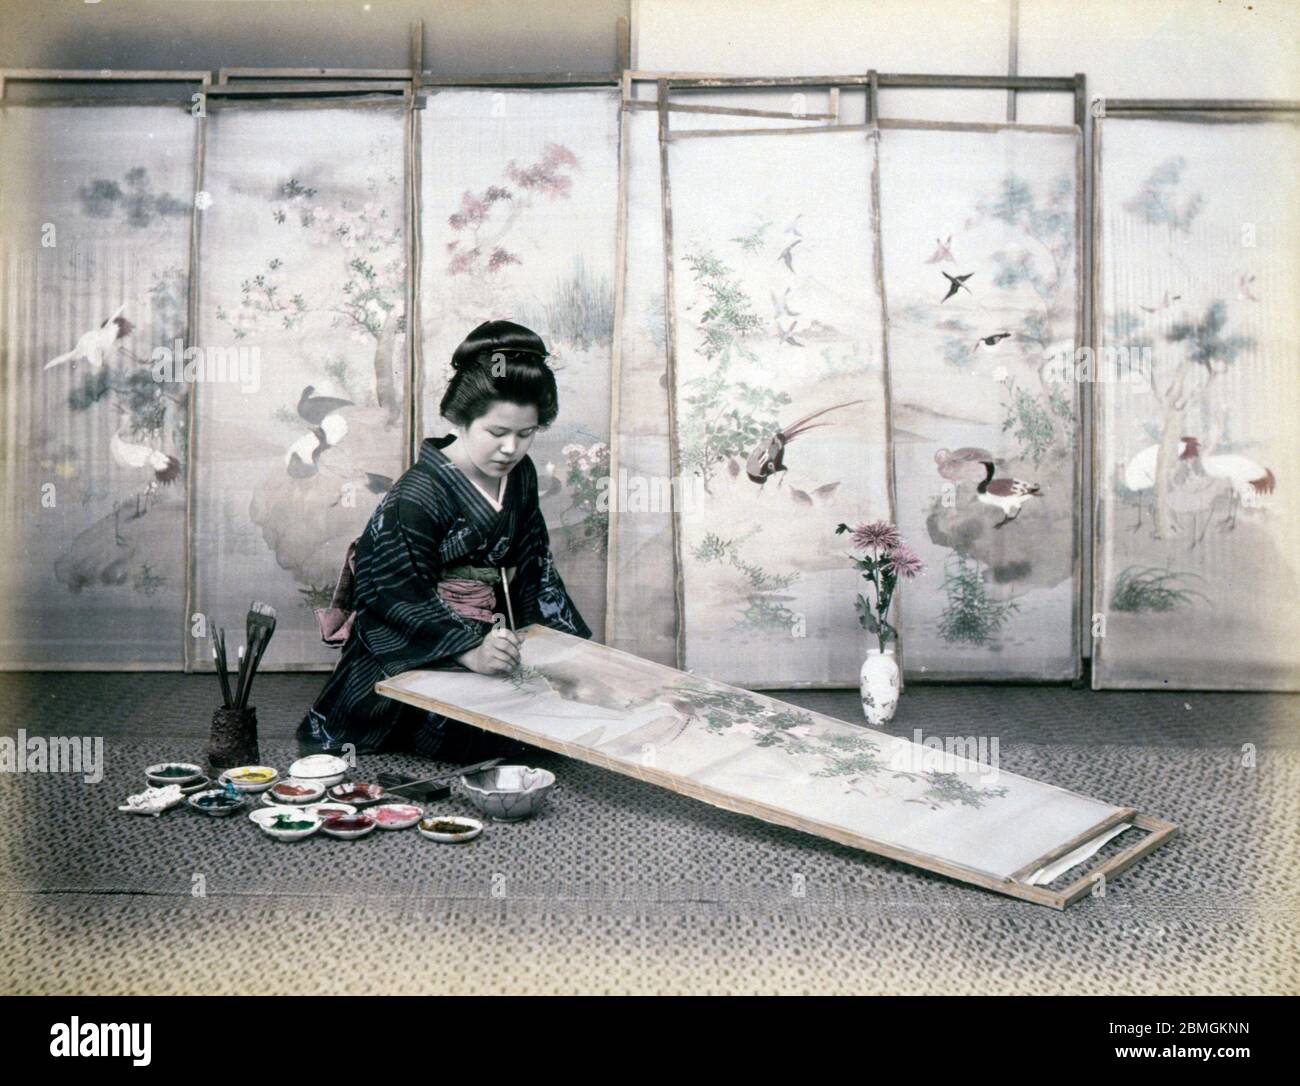 [ 1880er Jahre Japan - Japanische Künstlerin bei der Arbeit ] - EINE Künstlerin malt ein traditionelles Gemälde auf einer Leinwand. Vintage Albumin-Fotografie aus dem 19. Jahrhundert. Stockfoto